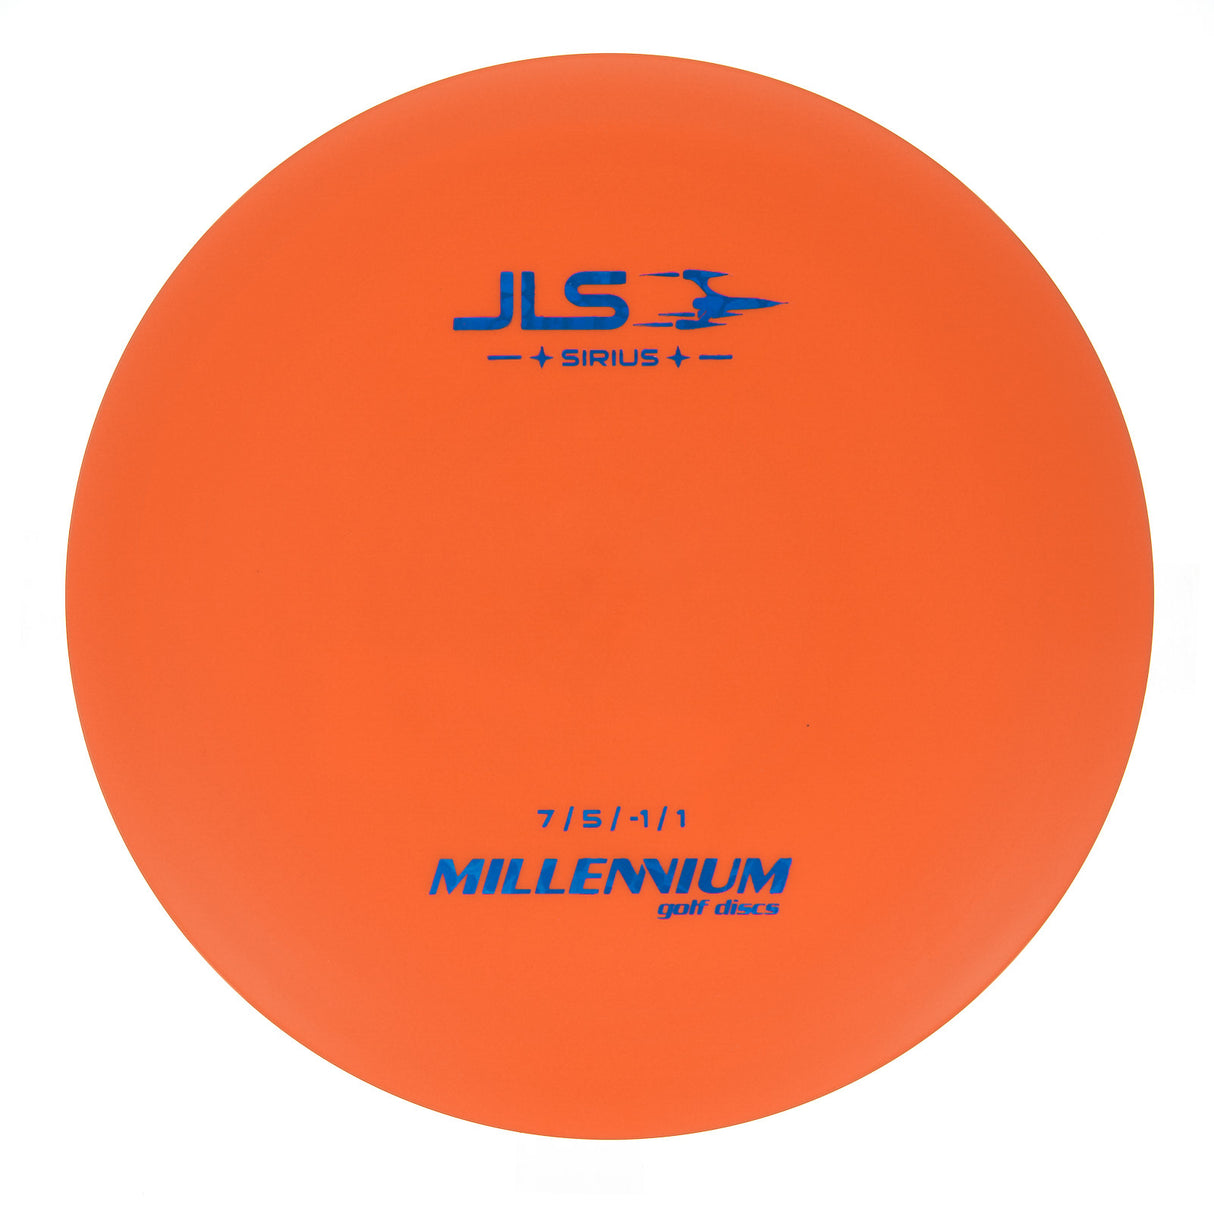 Millennium JLS - Sirius 172g | Style 0001